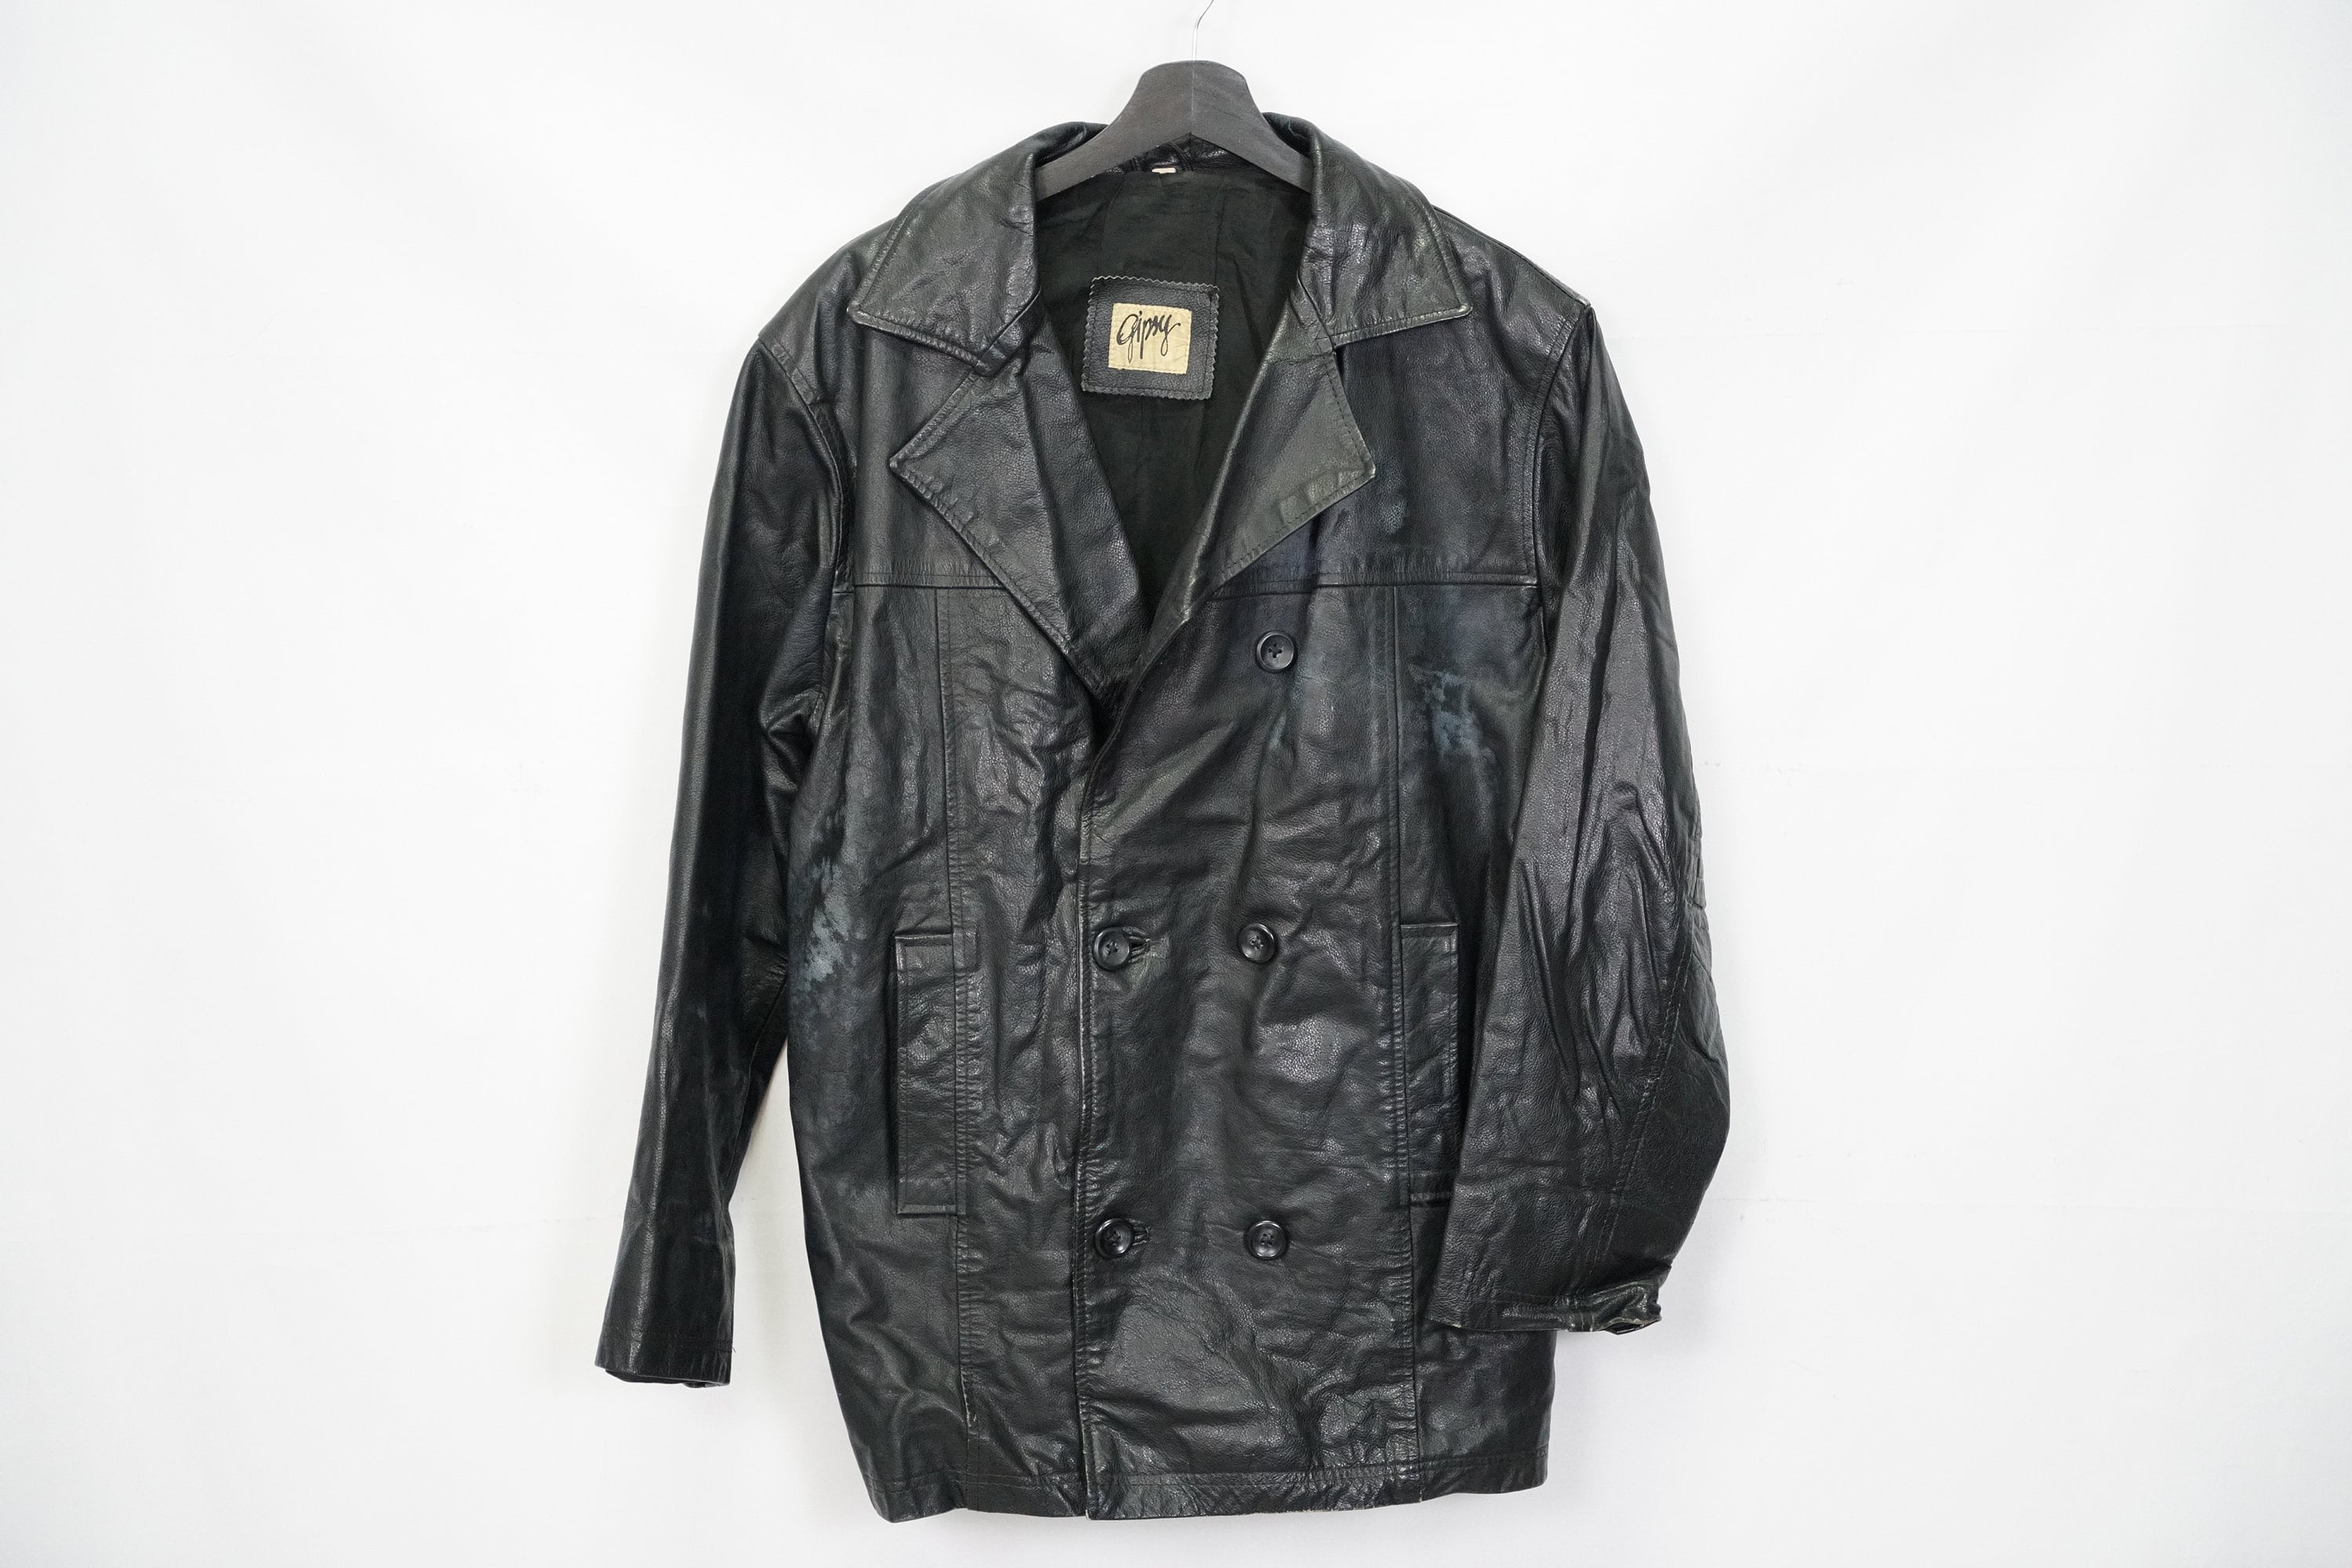 Gipsy Leather Jacket - Etsy Israel